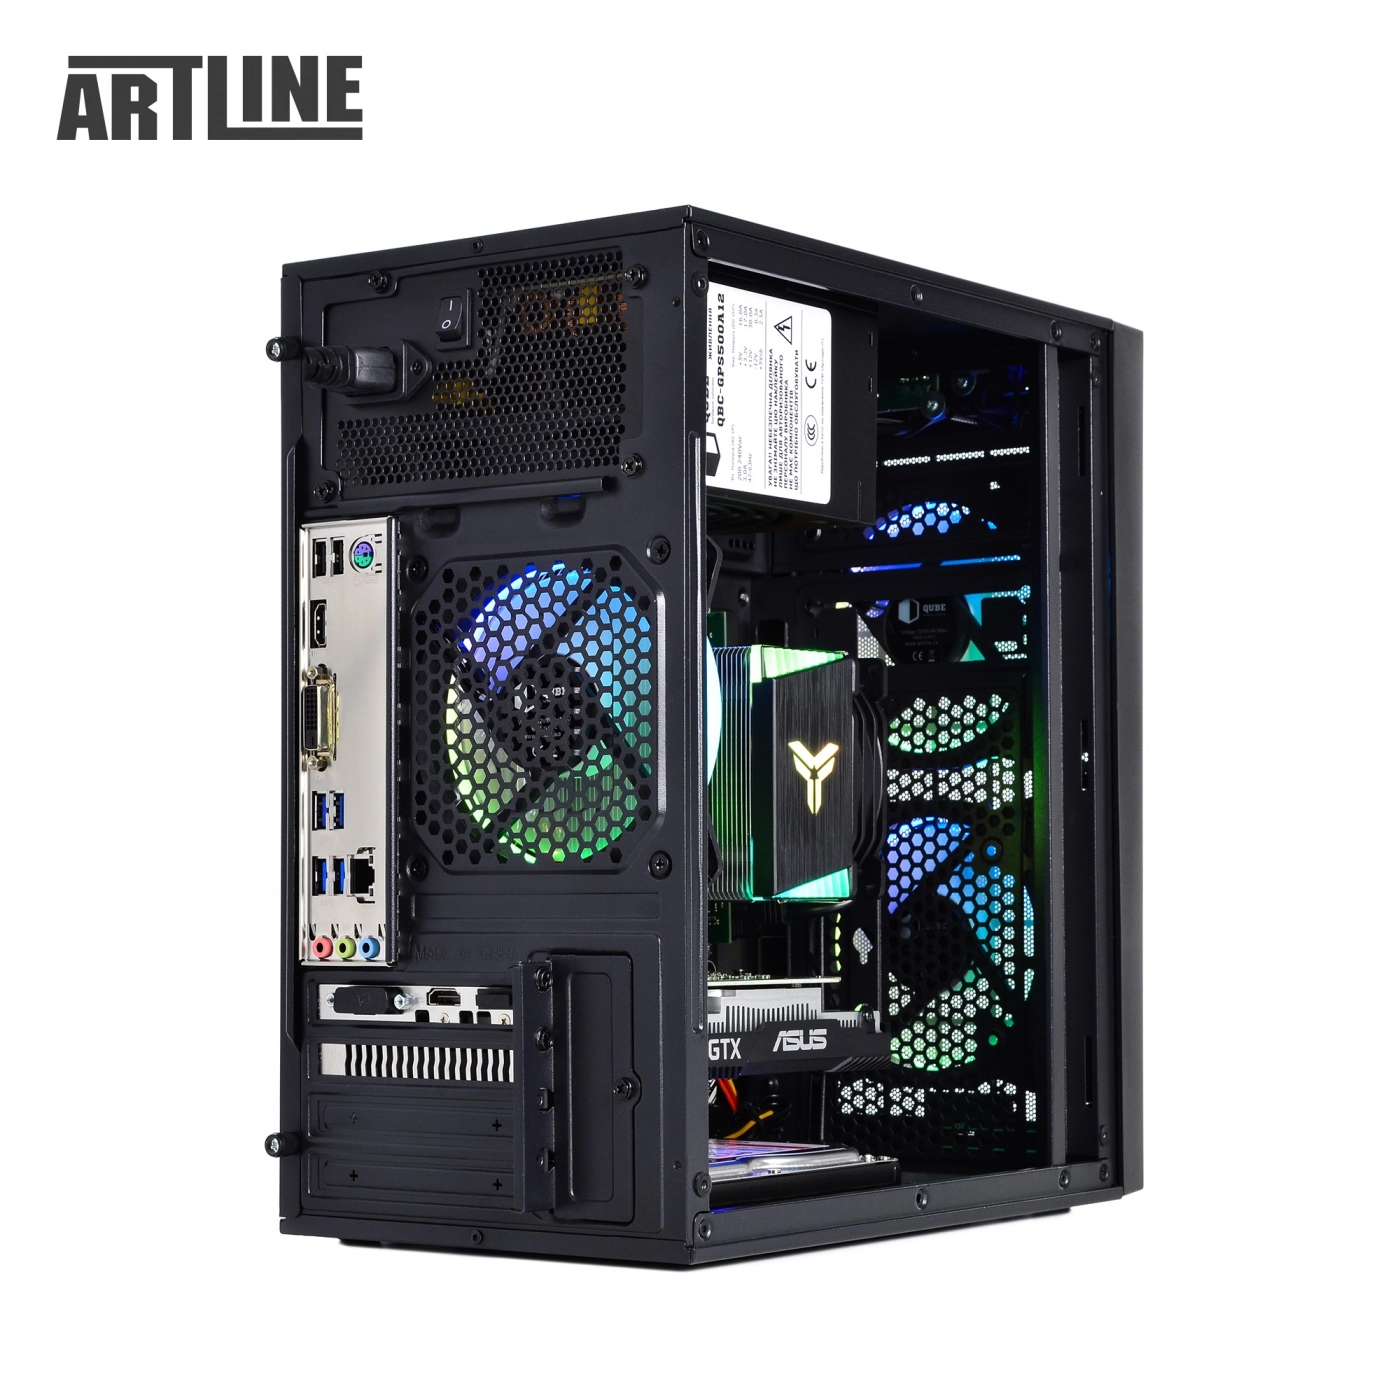 Купить Компьютер ARTLINE Gaming X43v29 - фото 12